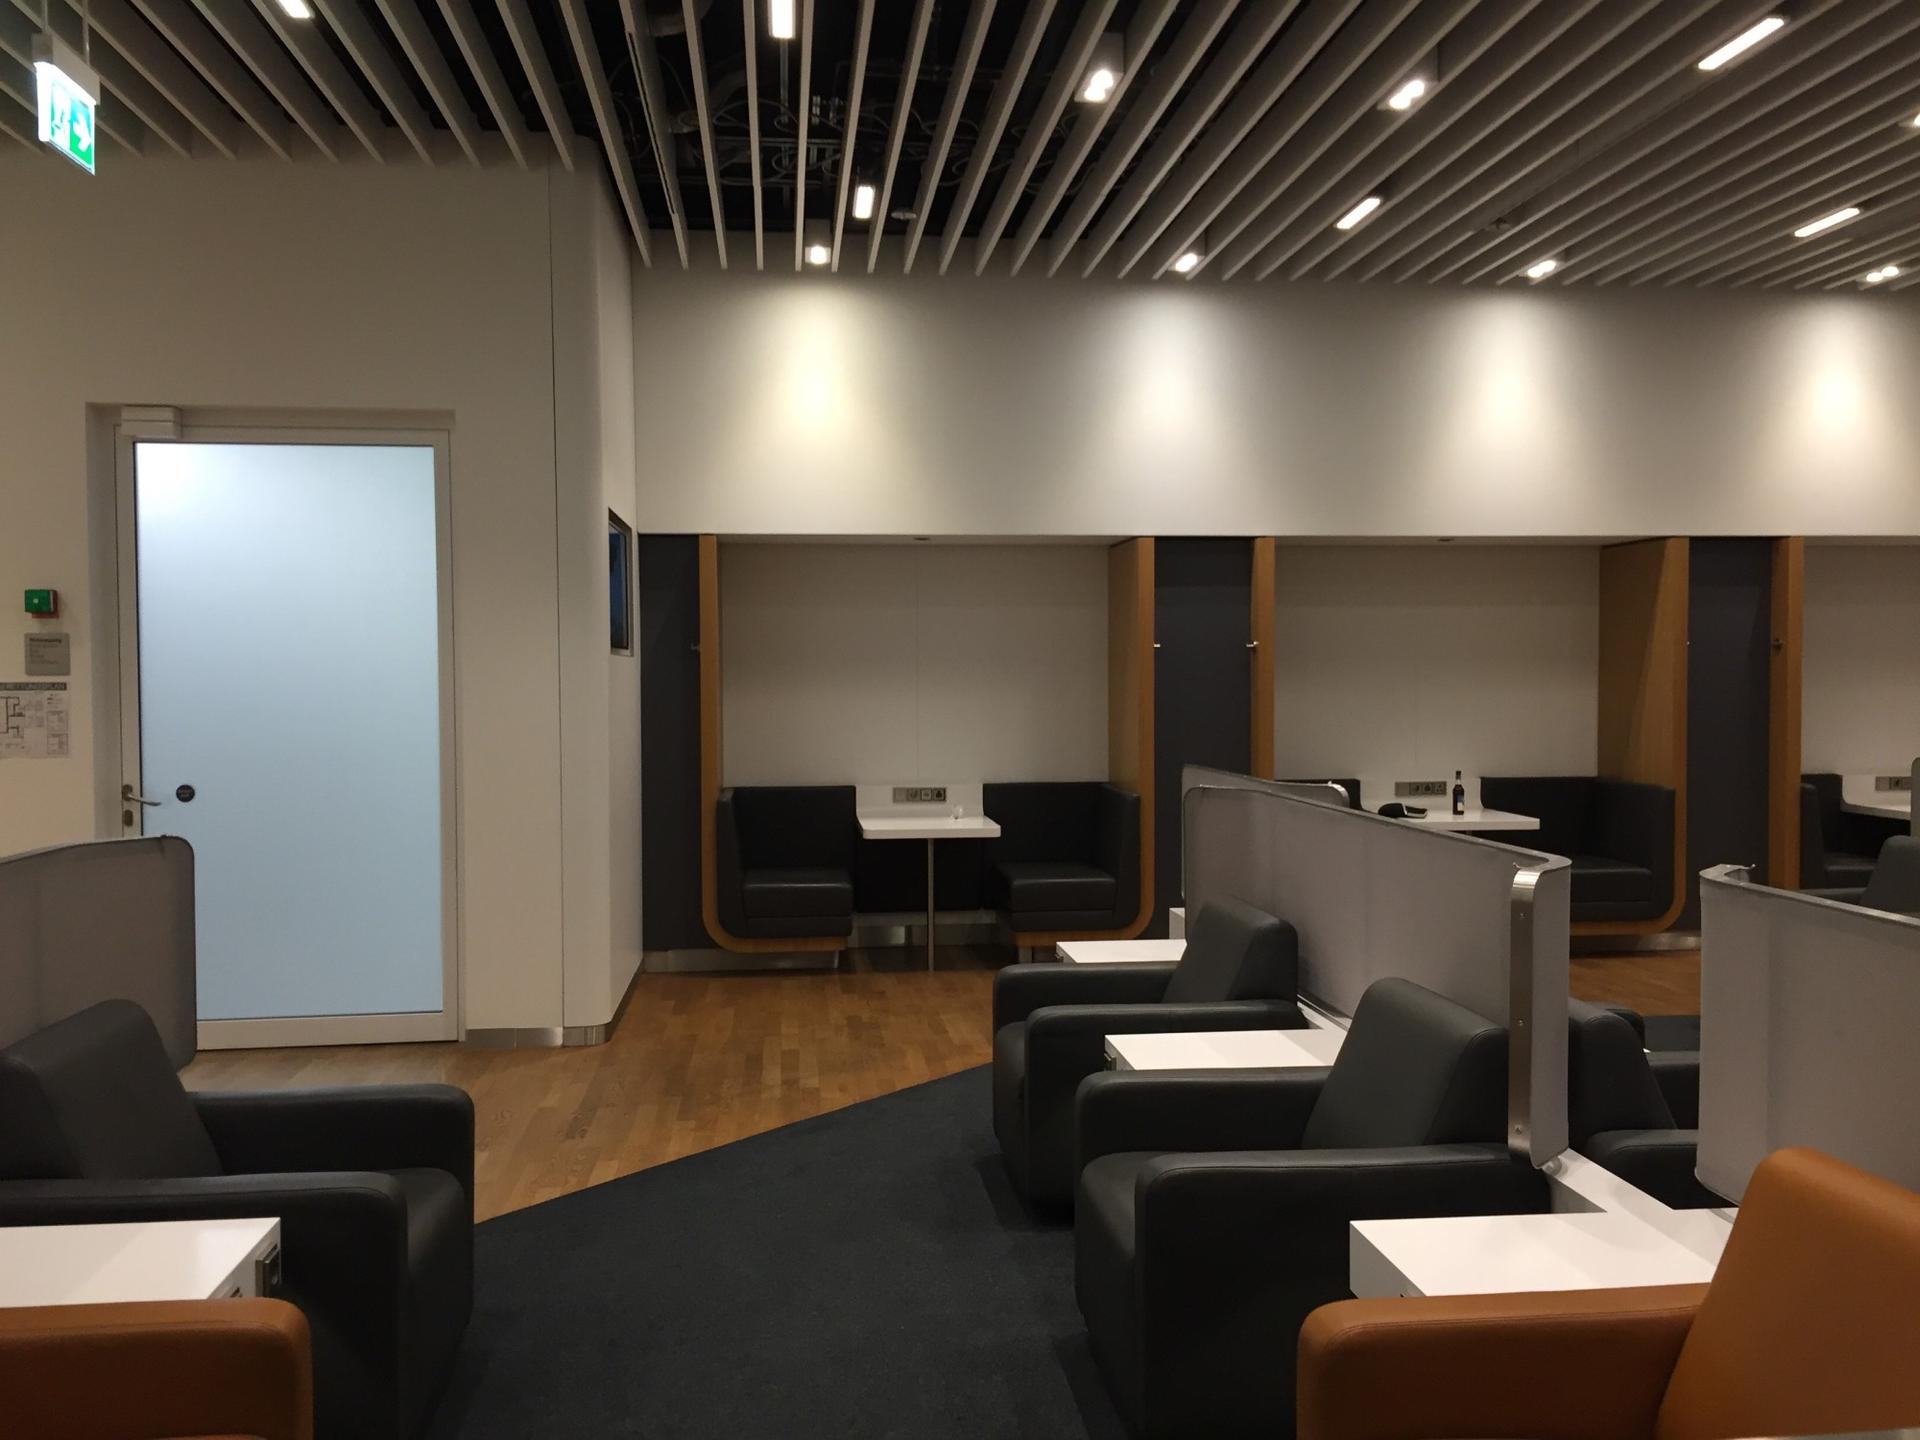 Lufthansa Business Lounge (Non-Schengen) image 6 of 34